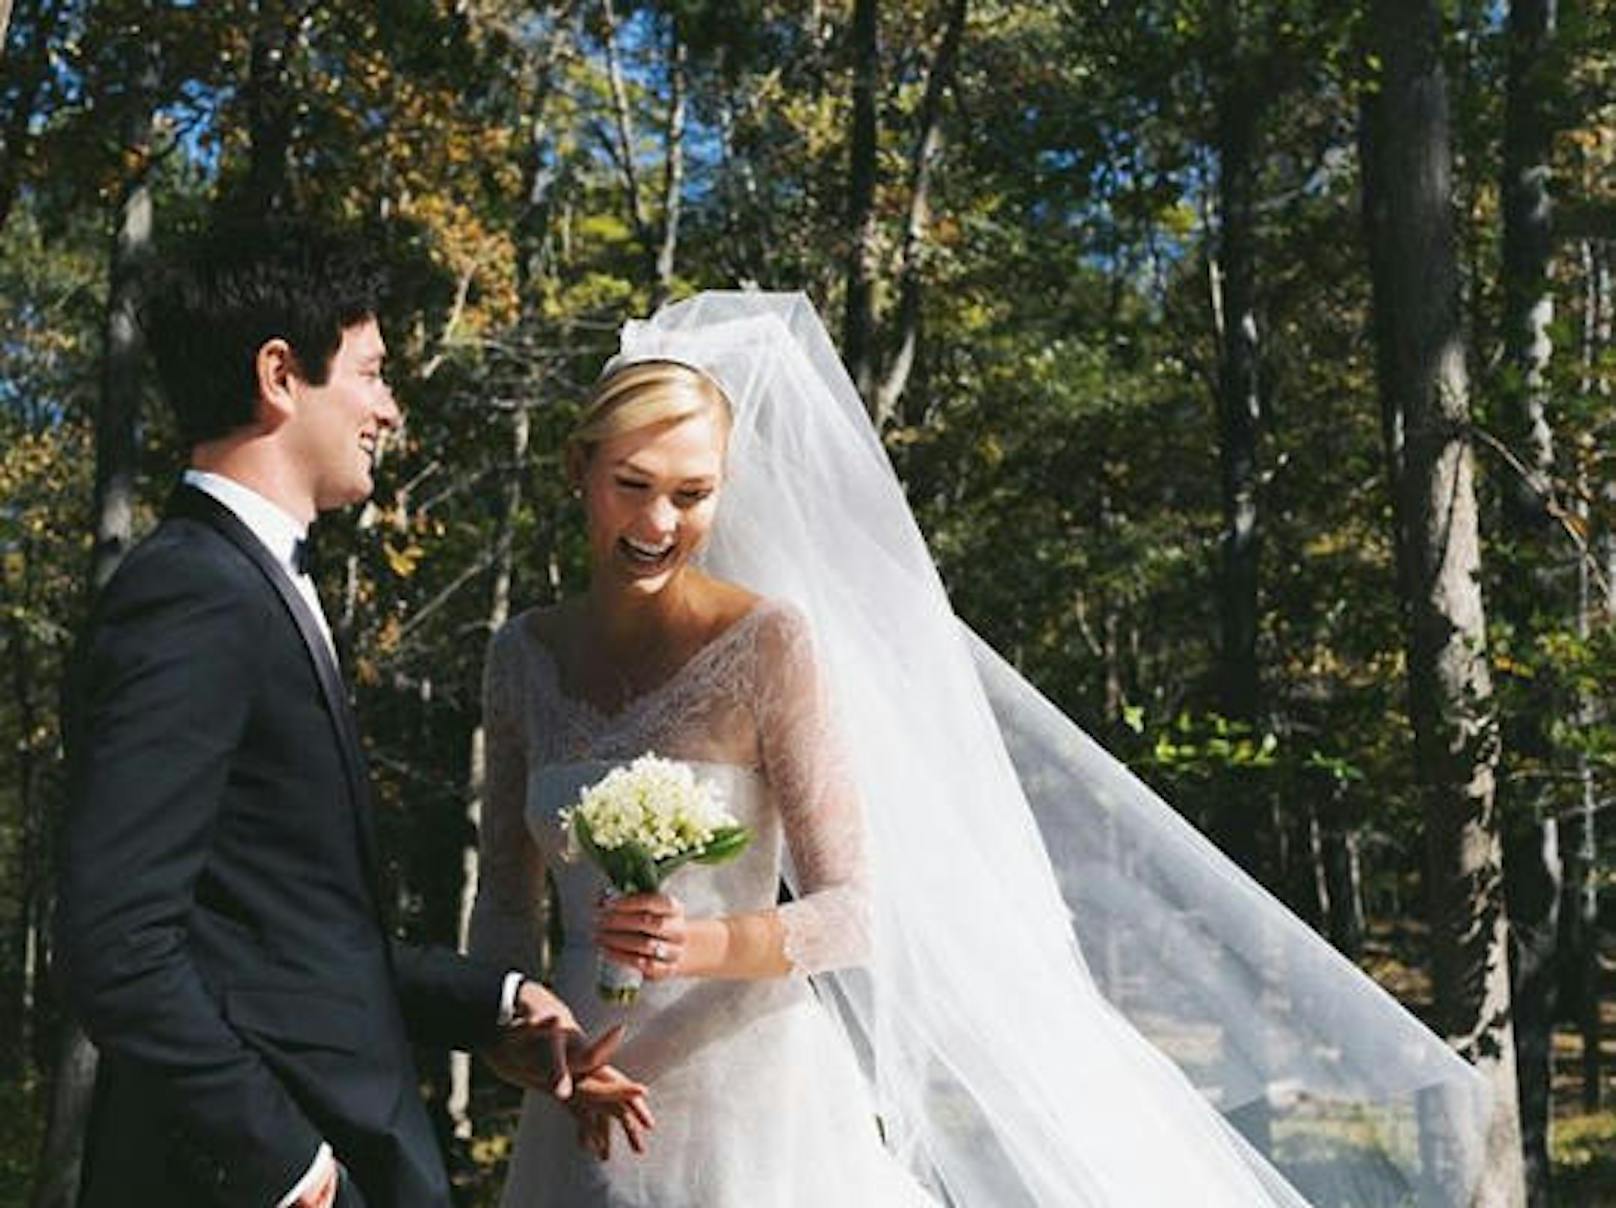 19.10.2018: Karlie Kloss postet das erste Foto ihrer Hochzeit. Am 18.10.2018 hat sie Joshua Kushner geheiratet. Sein Bruder Jared ist der Schwiegersohn von Donald Trump